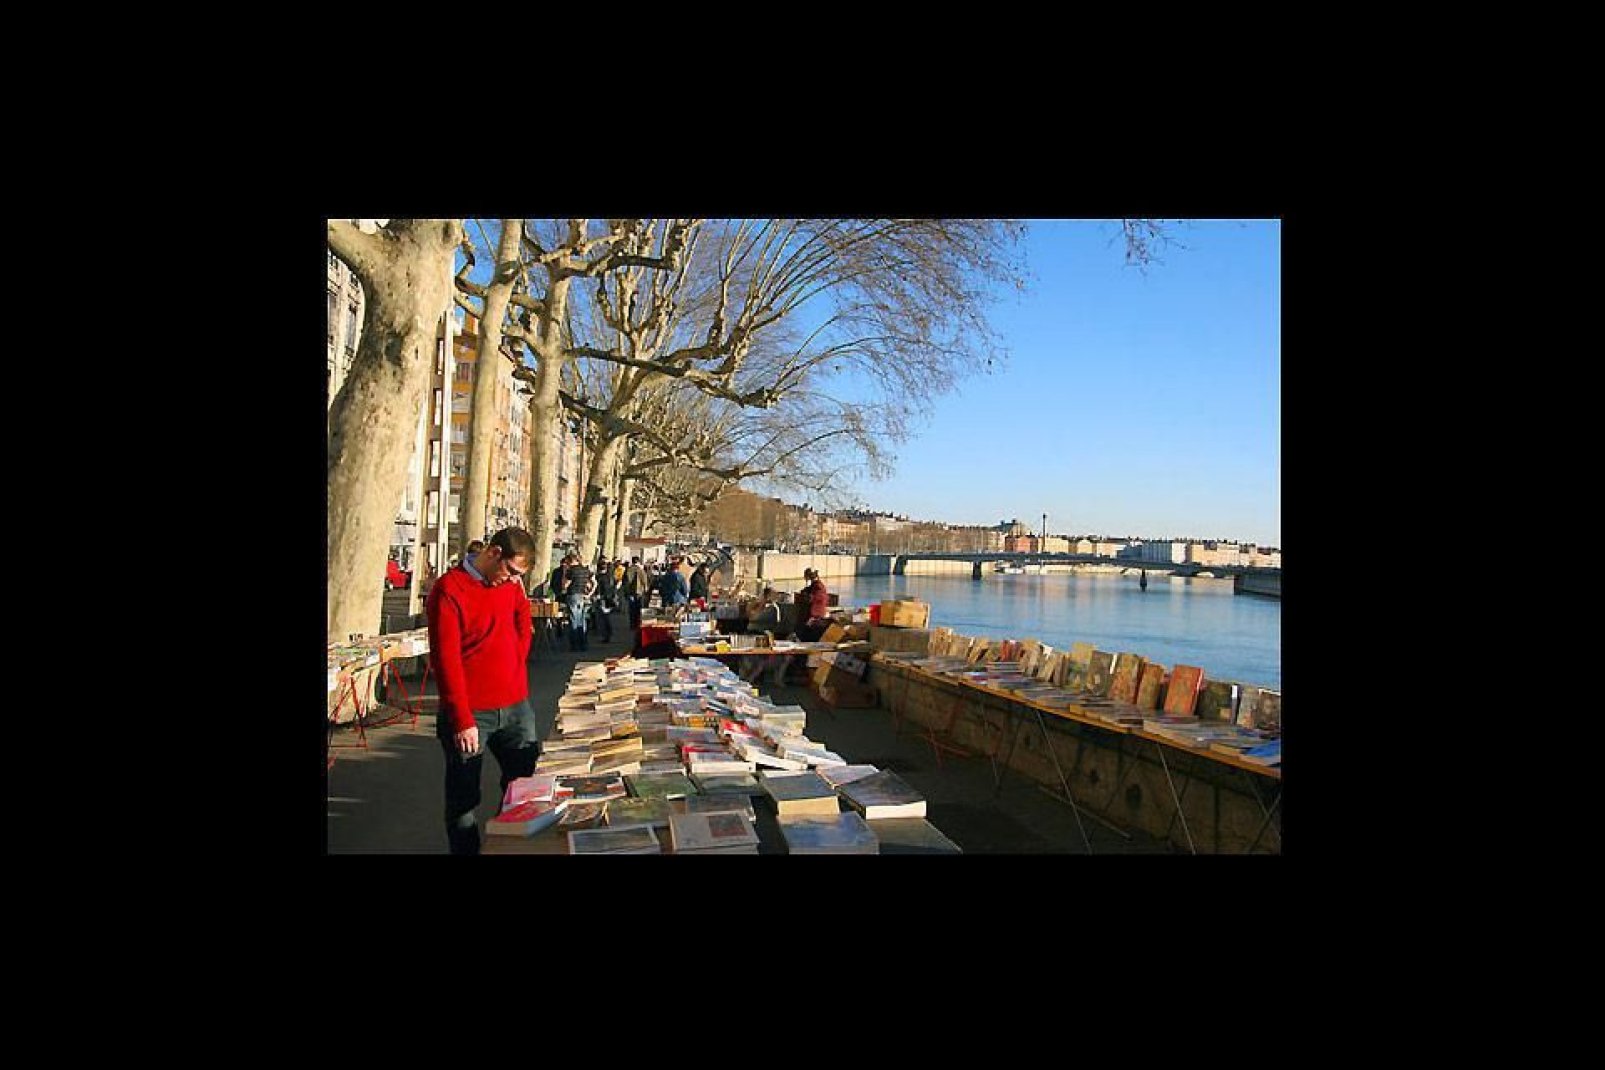 Hier finden in regelmäßigen Abständen Büchermärkte statt. Leseratten werden in der größten unter freiem Himmel eingerichteten Buchhandlung sicherlich ihr großes Glück finden!